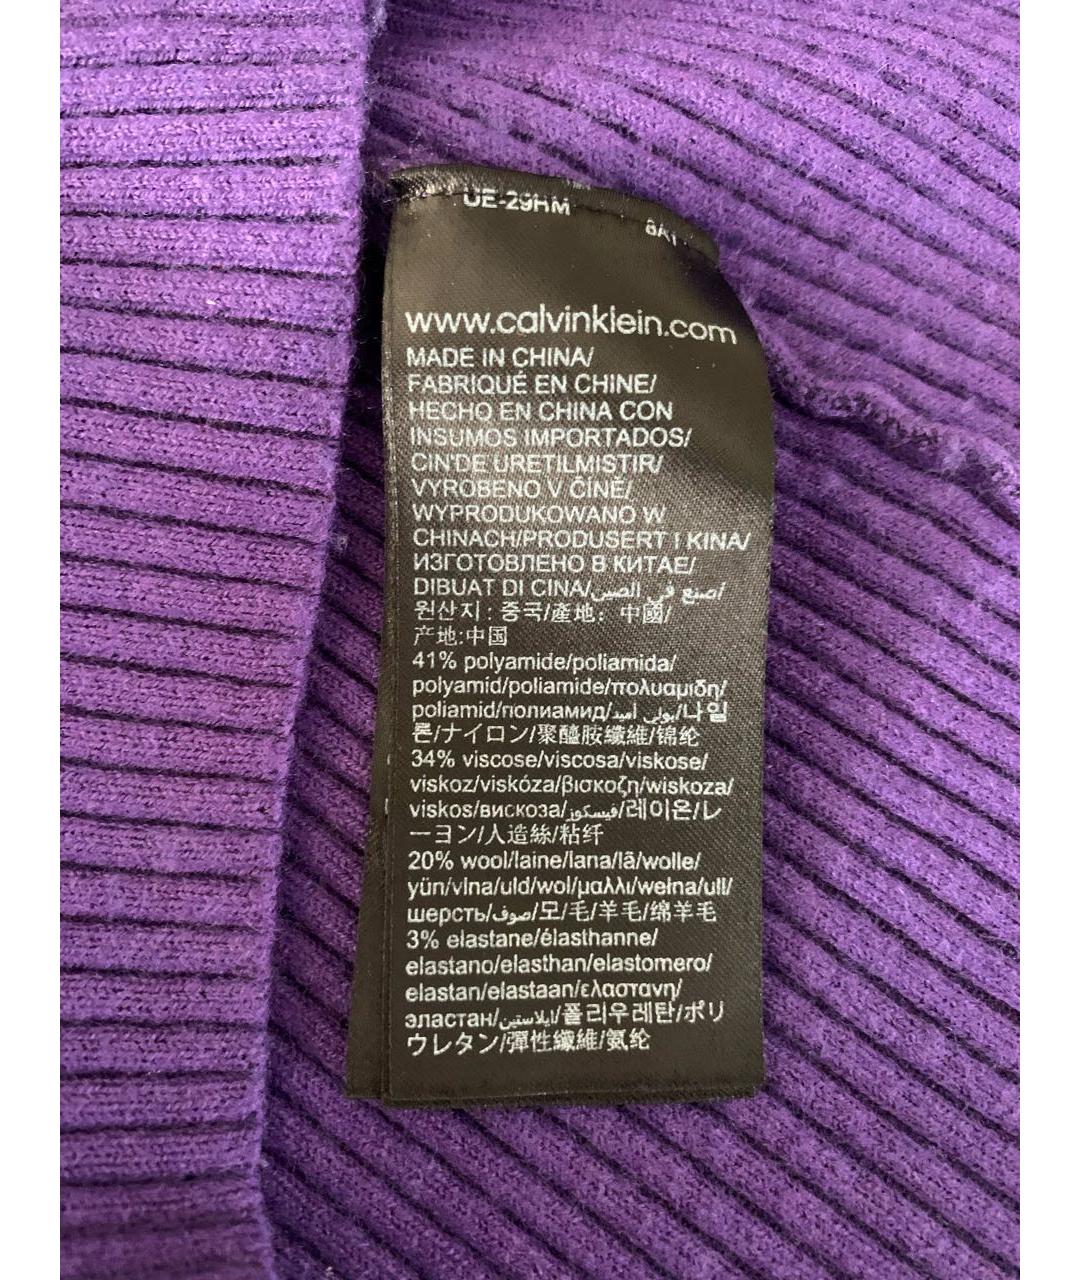 CALVIN KLEIN JEANS Фиолетовый полиамидовый джемпер / свитер, фото 6